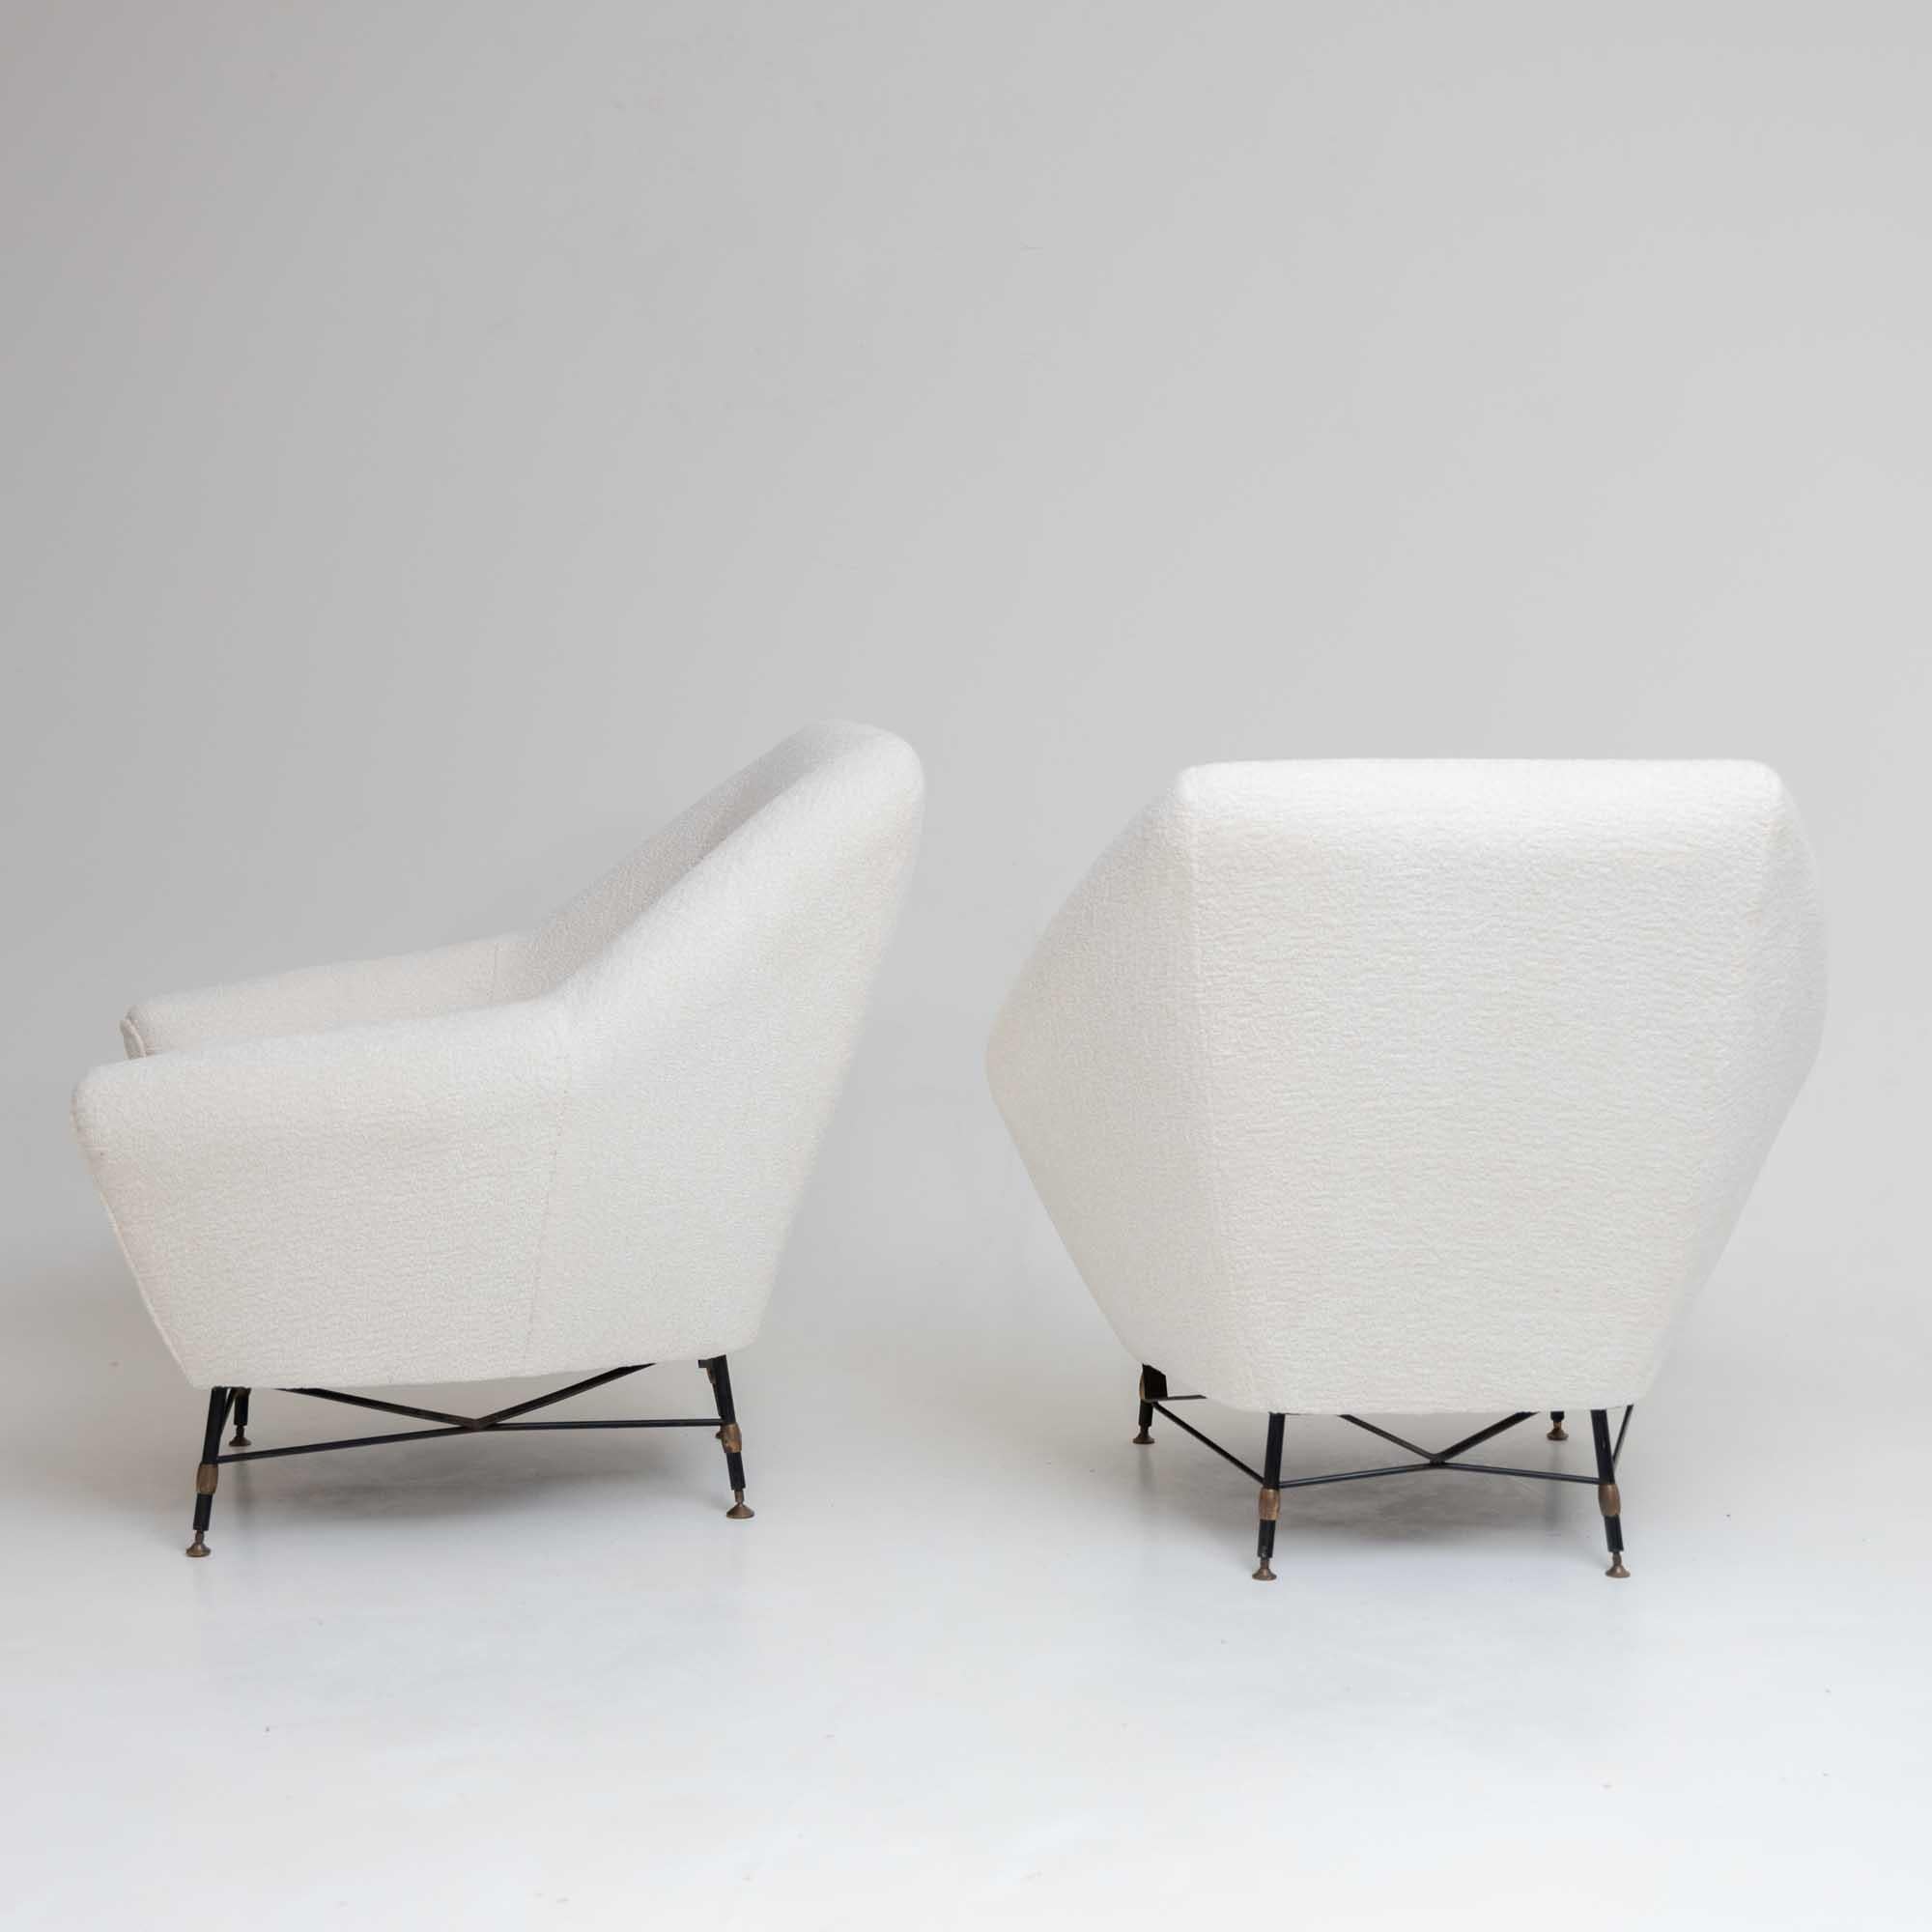 Ce duo de chaises longues généreusement rembourrées est doté de cadres en fer aux formes élégantes, offrant un mélange parfait de confort et de style. Récemment recouvertes d'un tissu bouclé blanc chic, ces chaises apportent une touche de